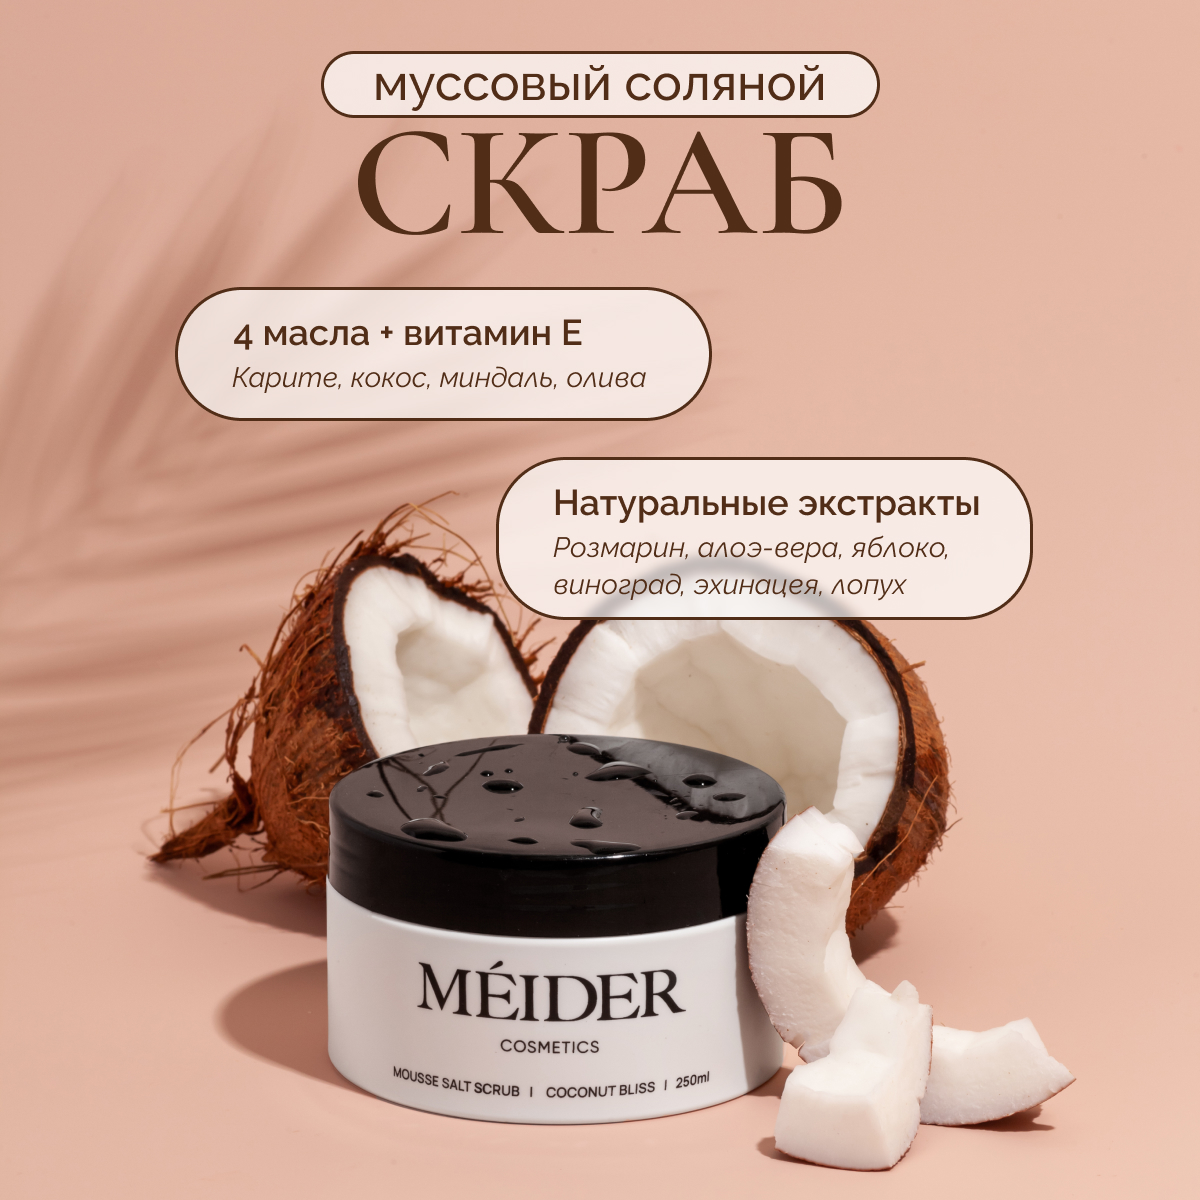 Соляной муссовый скраб для тела MEIDER Cosmetics Coconut Bliss кокос и масло карите, 300 г брат лучшей подруги